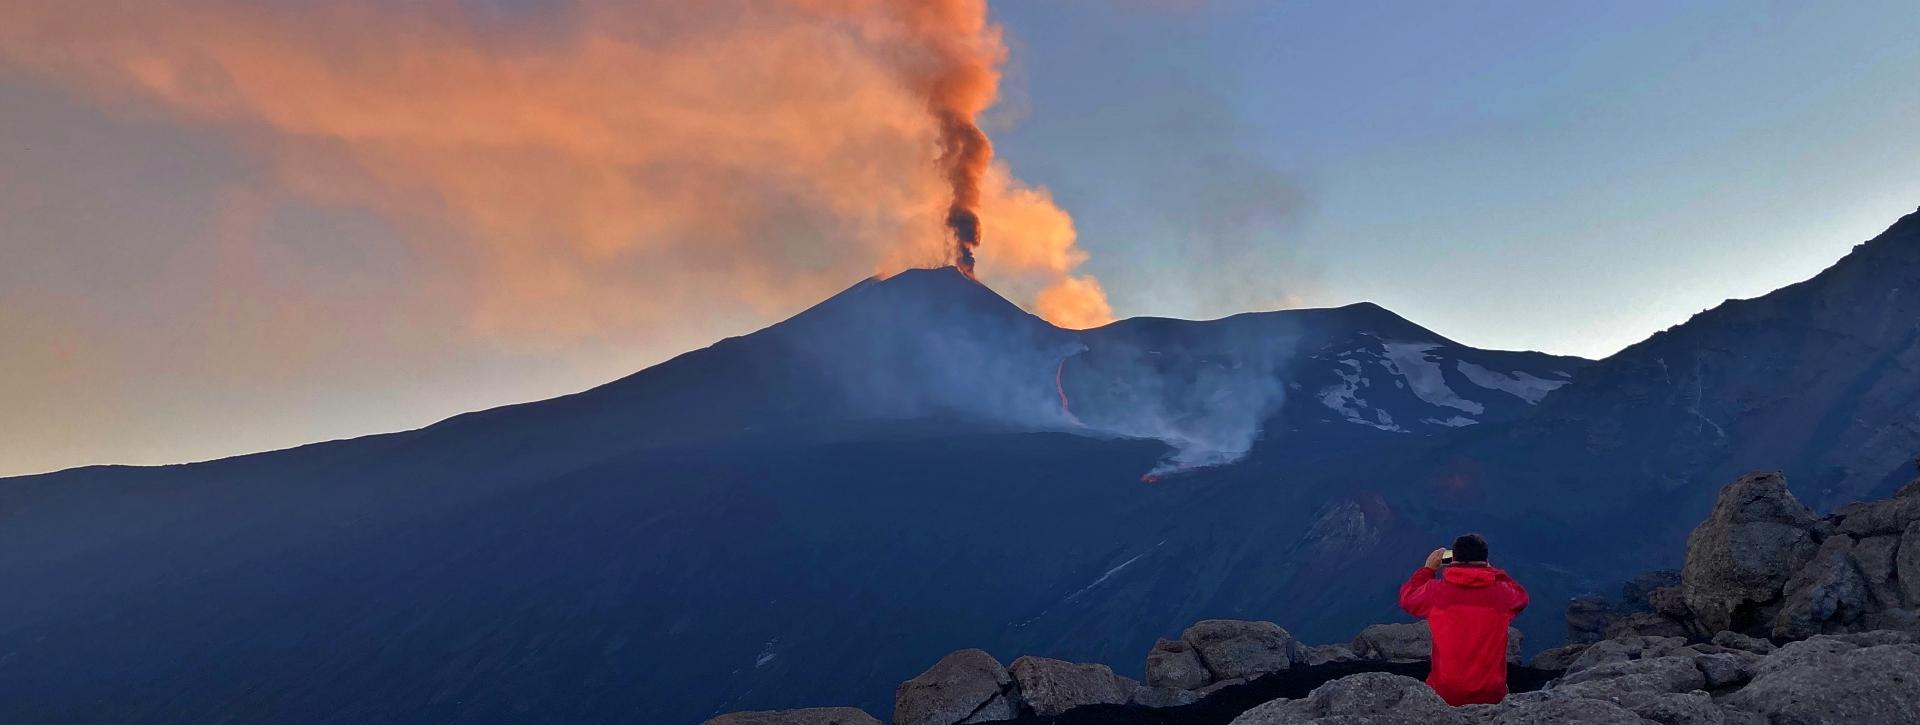 volcan etna eruption serracozzo etna3340